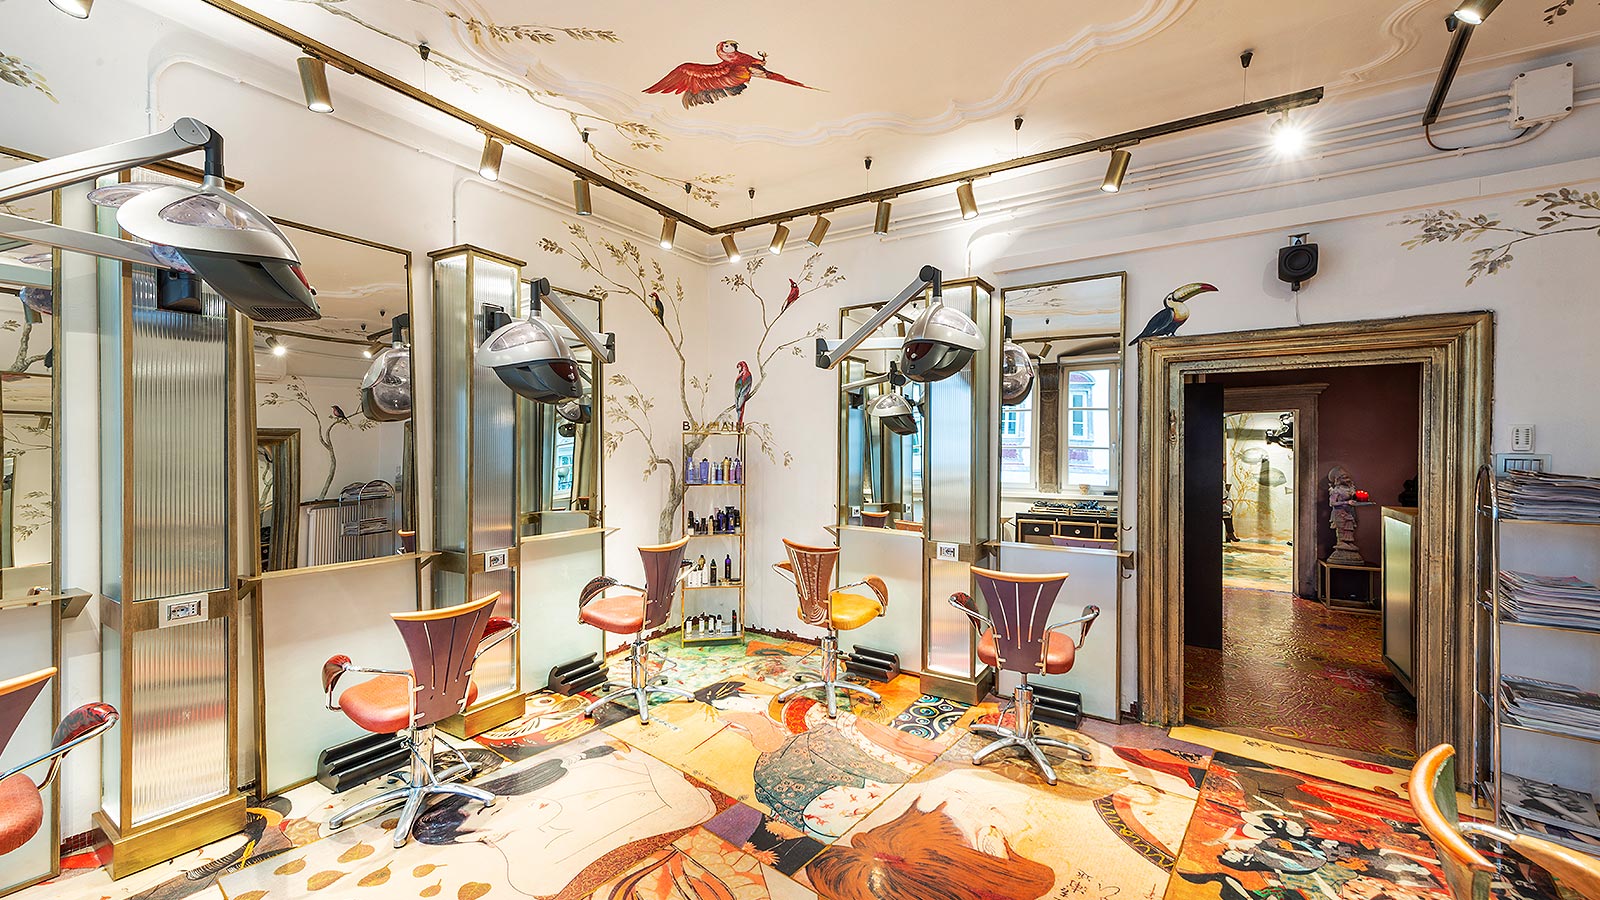 Dettaglio sulle poltrone dello storico salone di parrucchieri a Bolzano, con pareti e pavimenti colorati